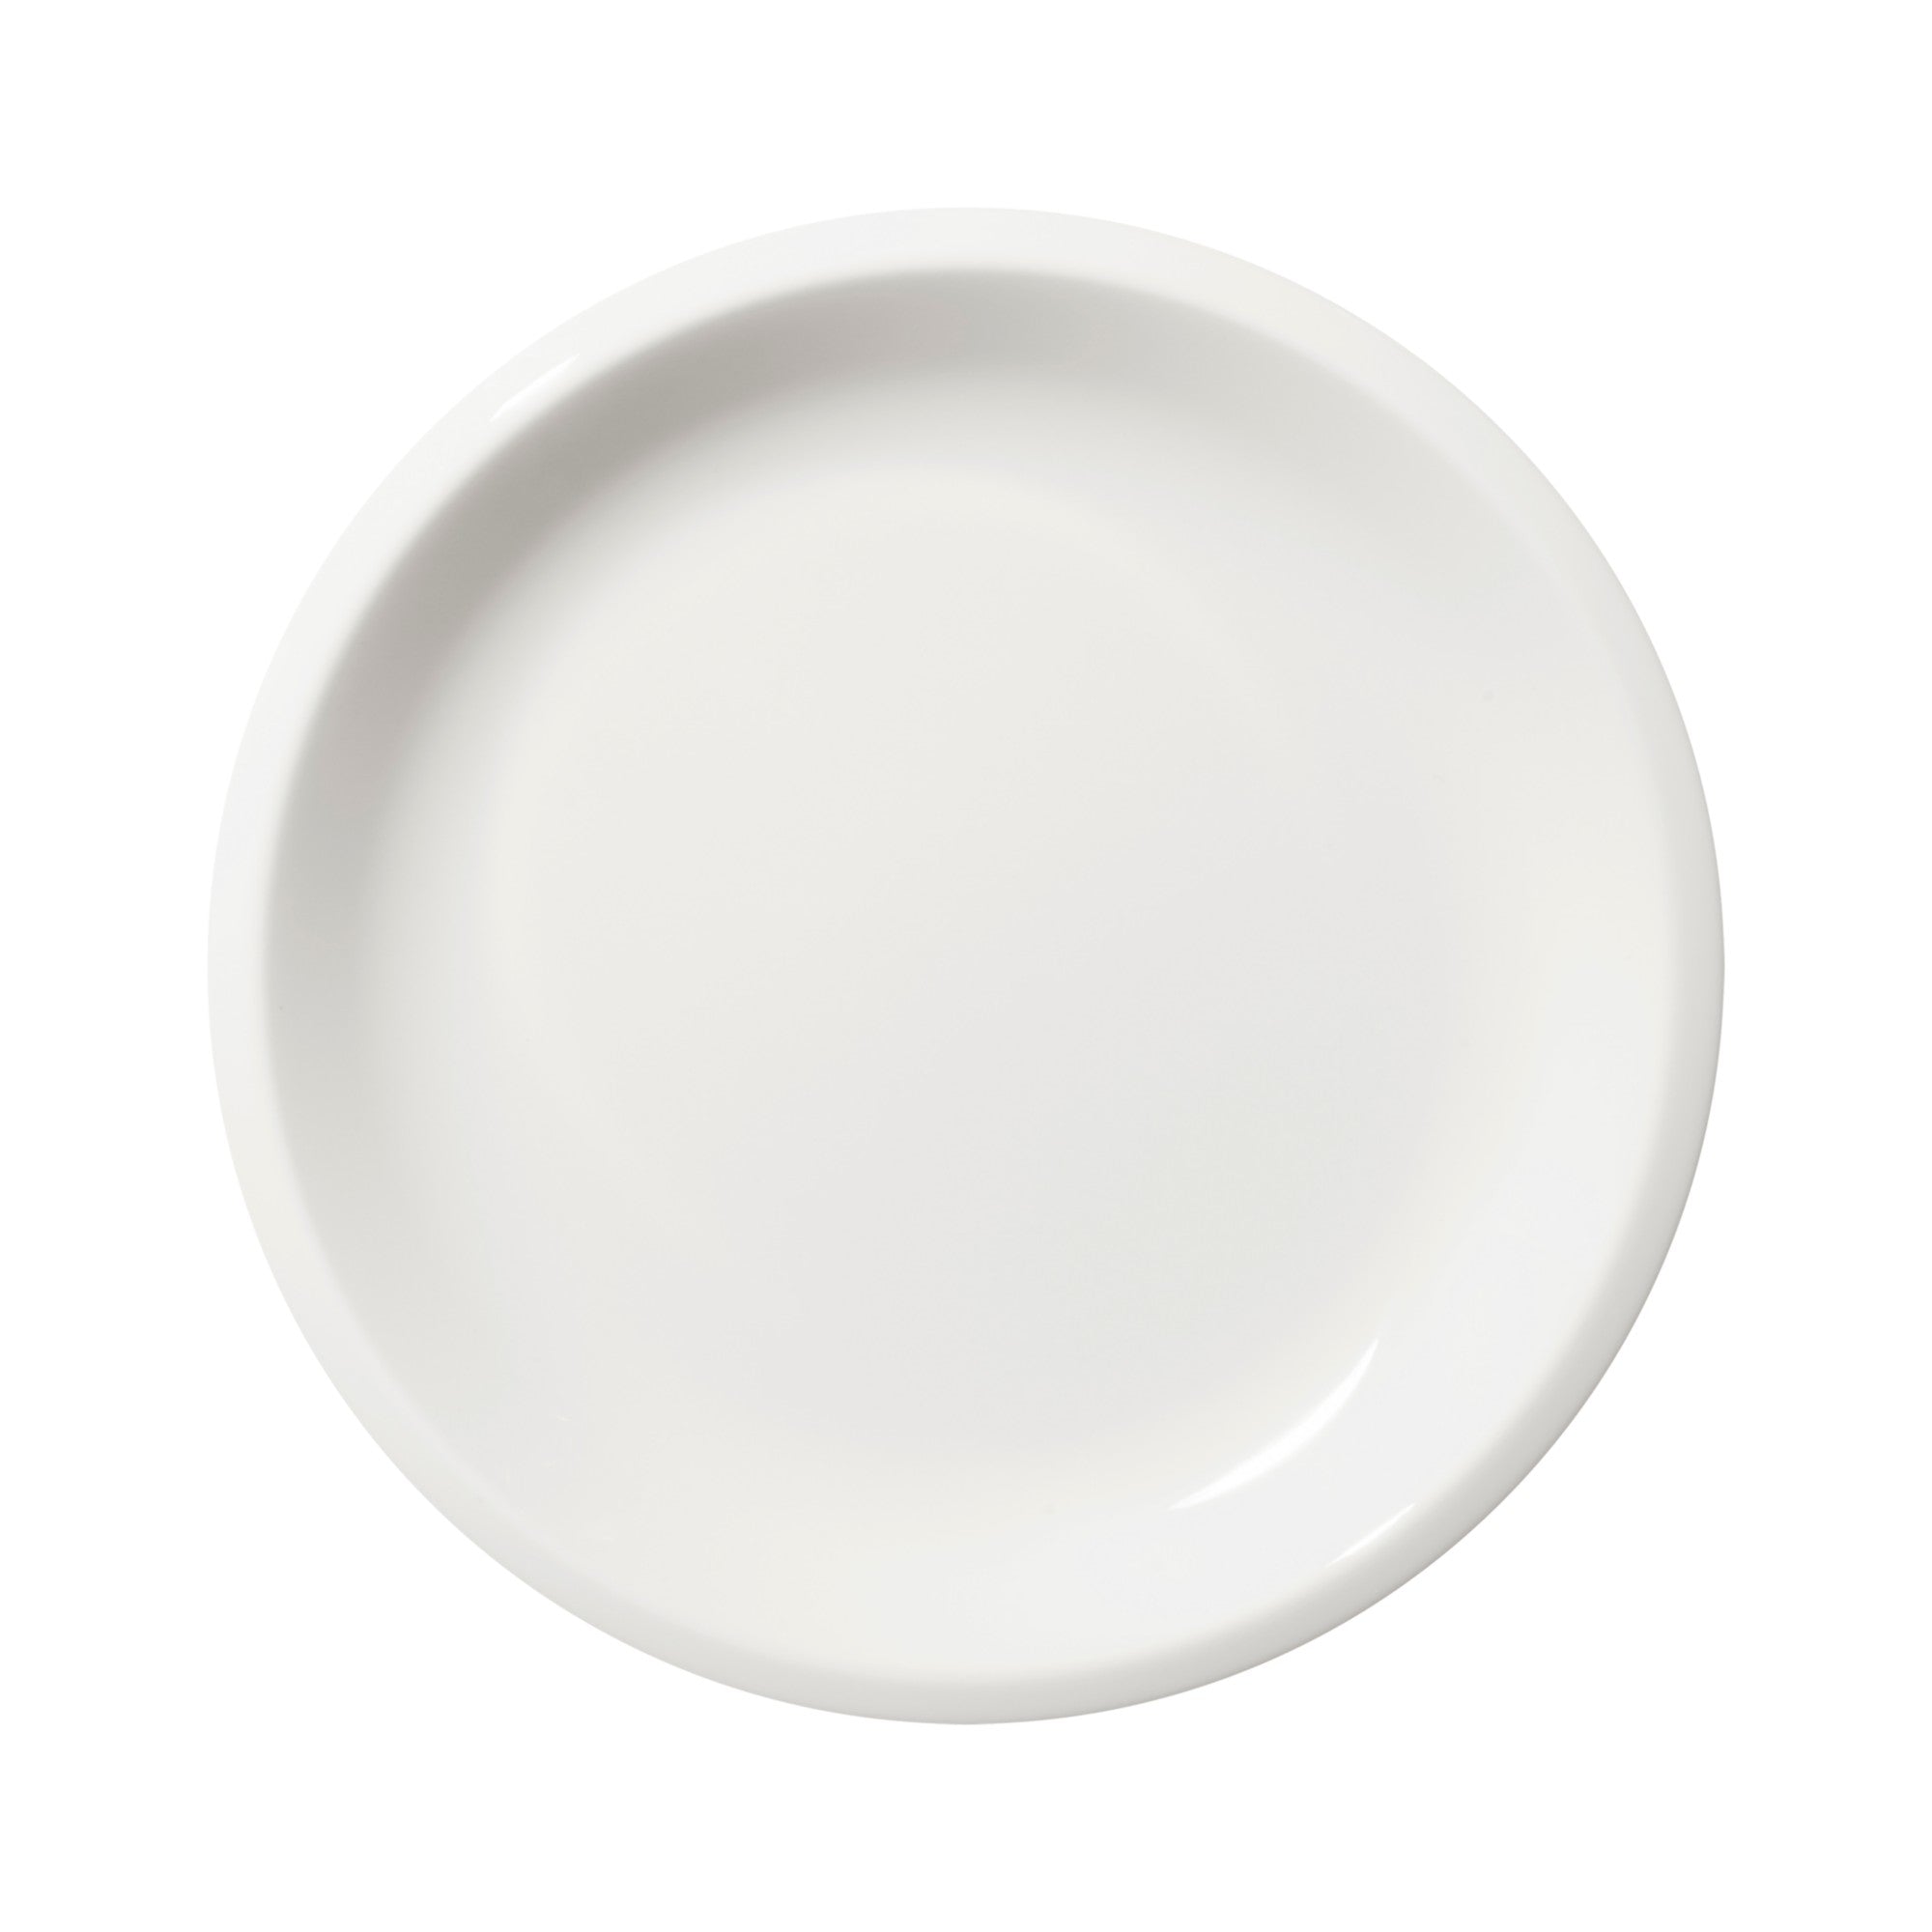 Raami Salad plate 7.75"